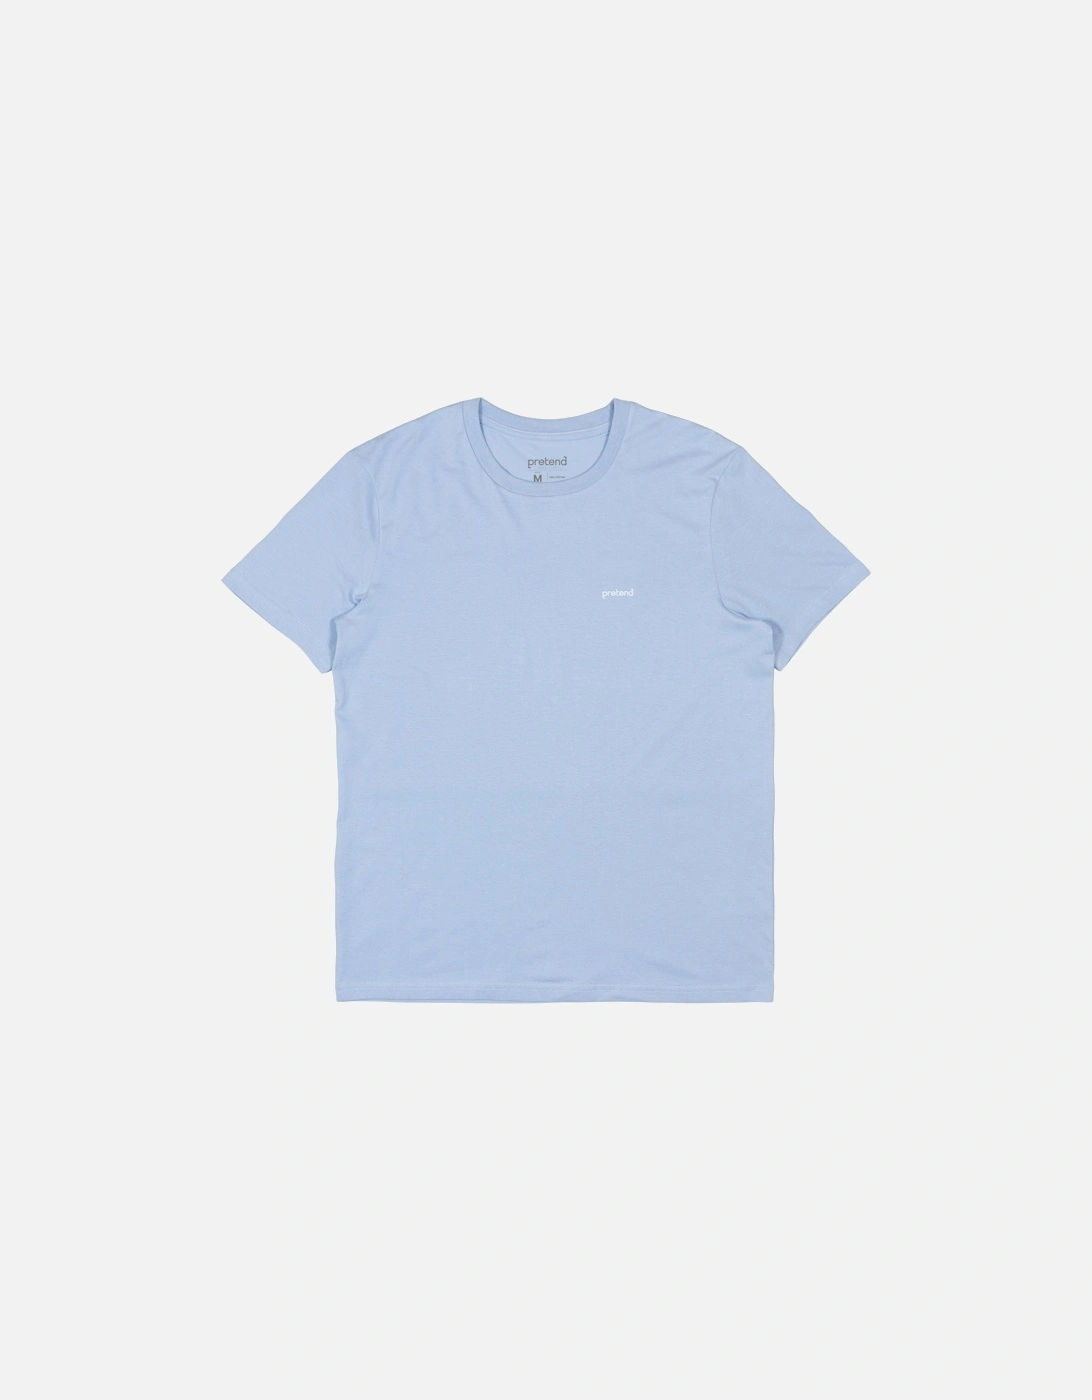 Pretend Brackets Chest T-Shirt - Sky Blue, 5 of 4